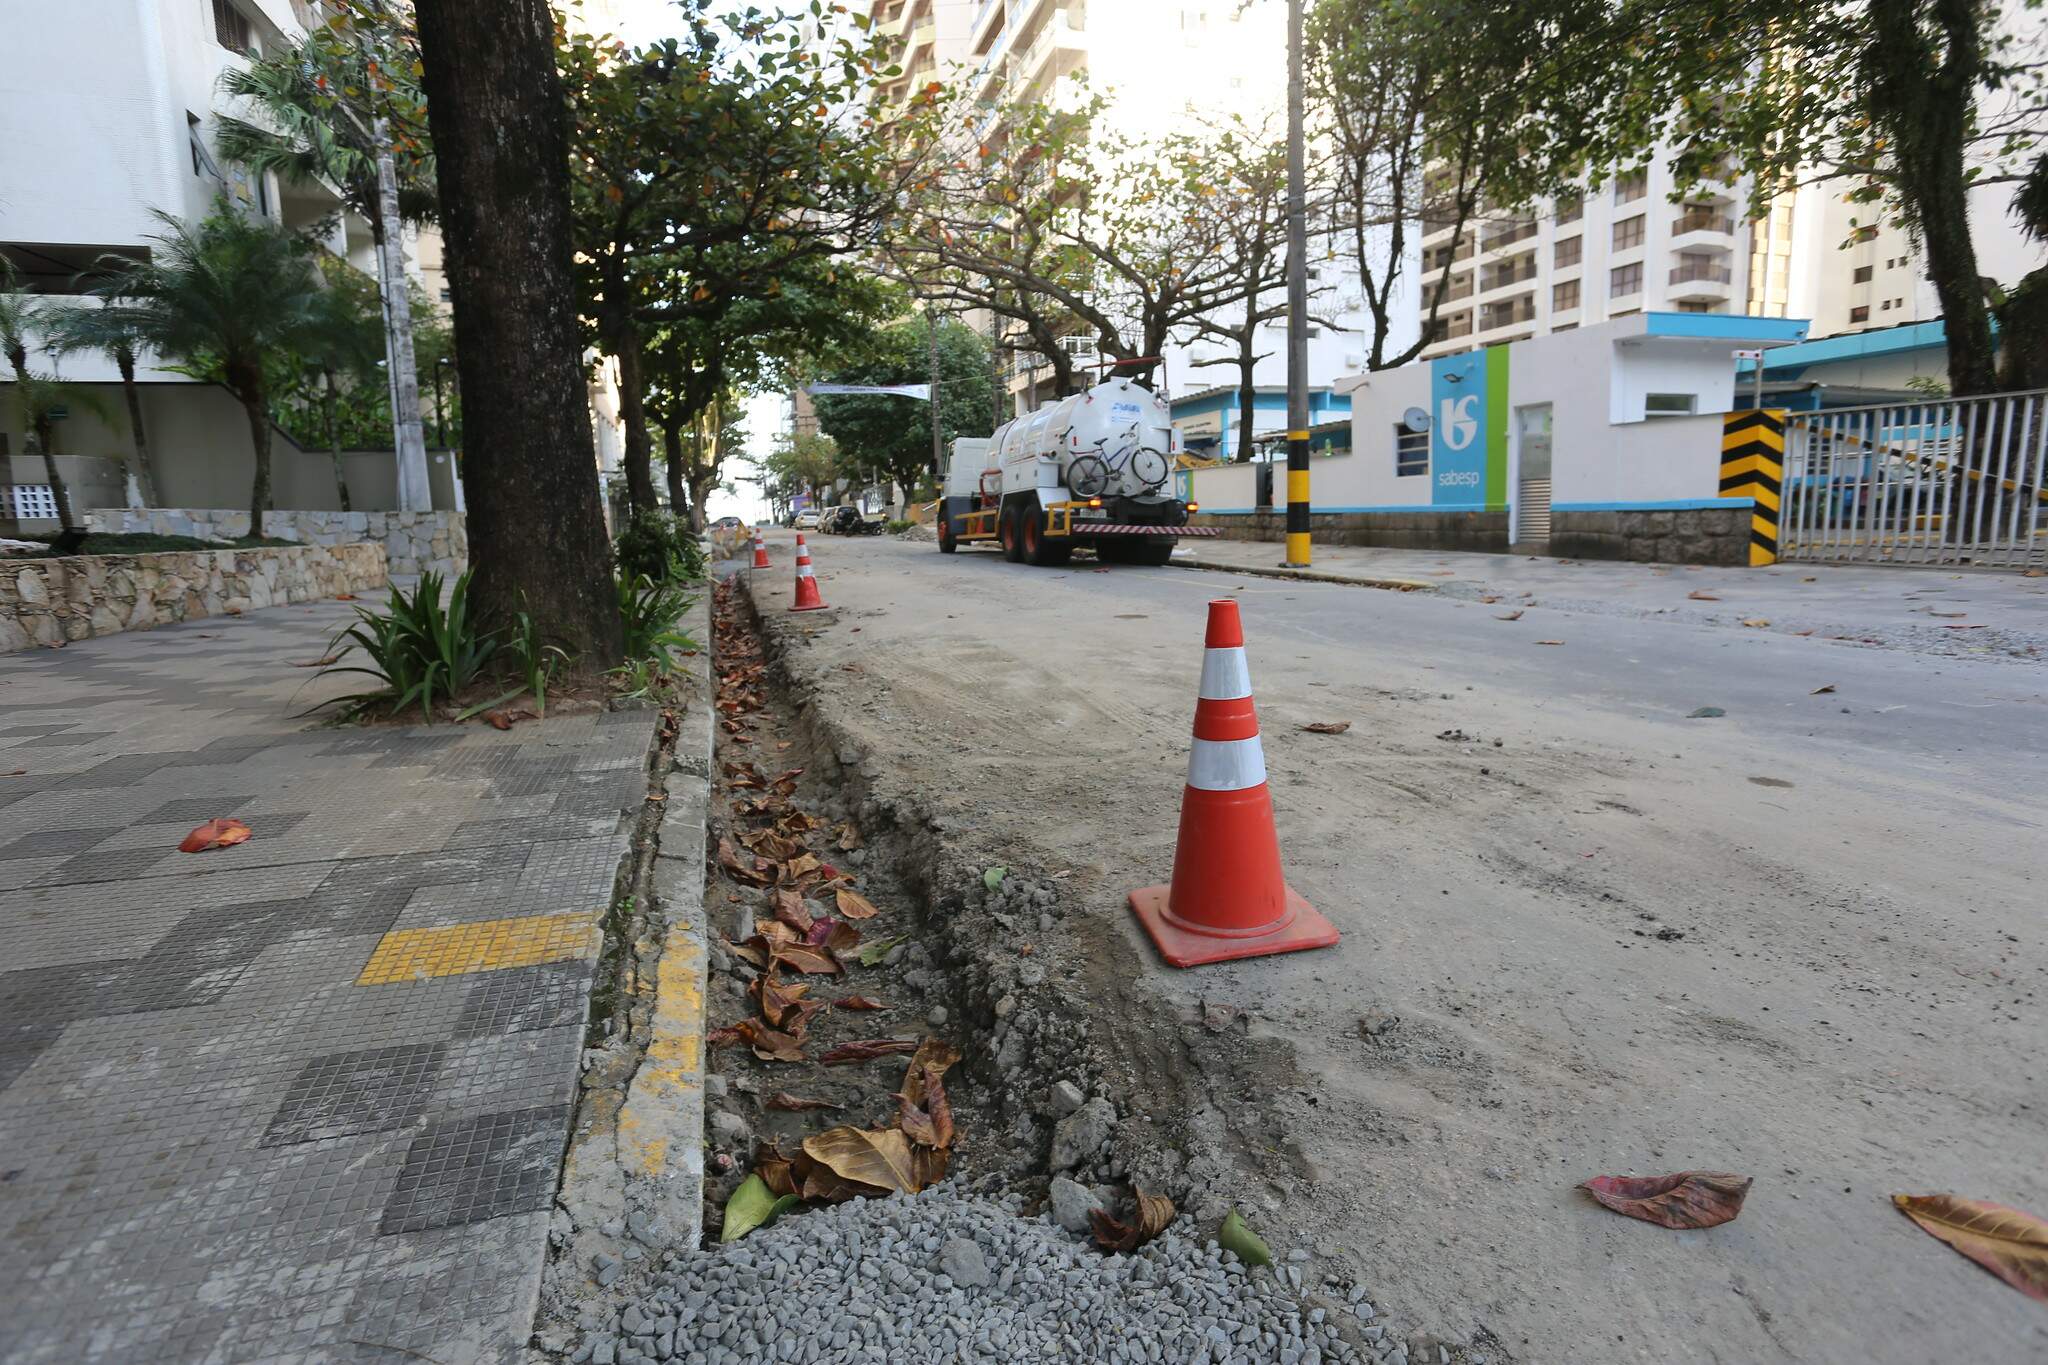 Obras tiveram início na semana passada com retirada do concreto das sarjetas da via